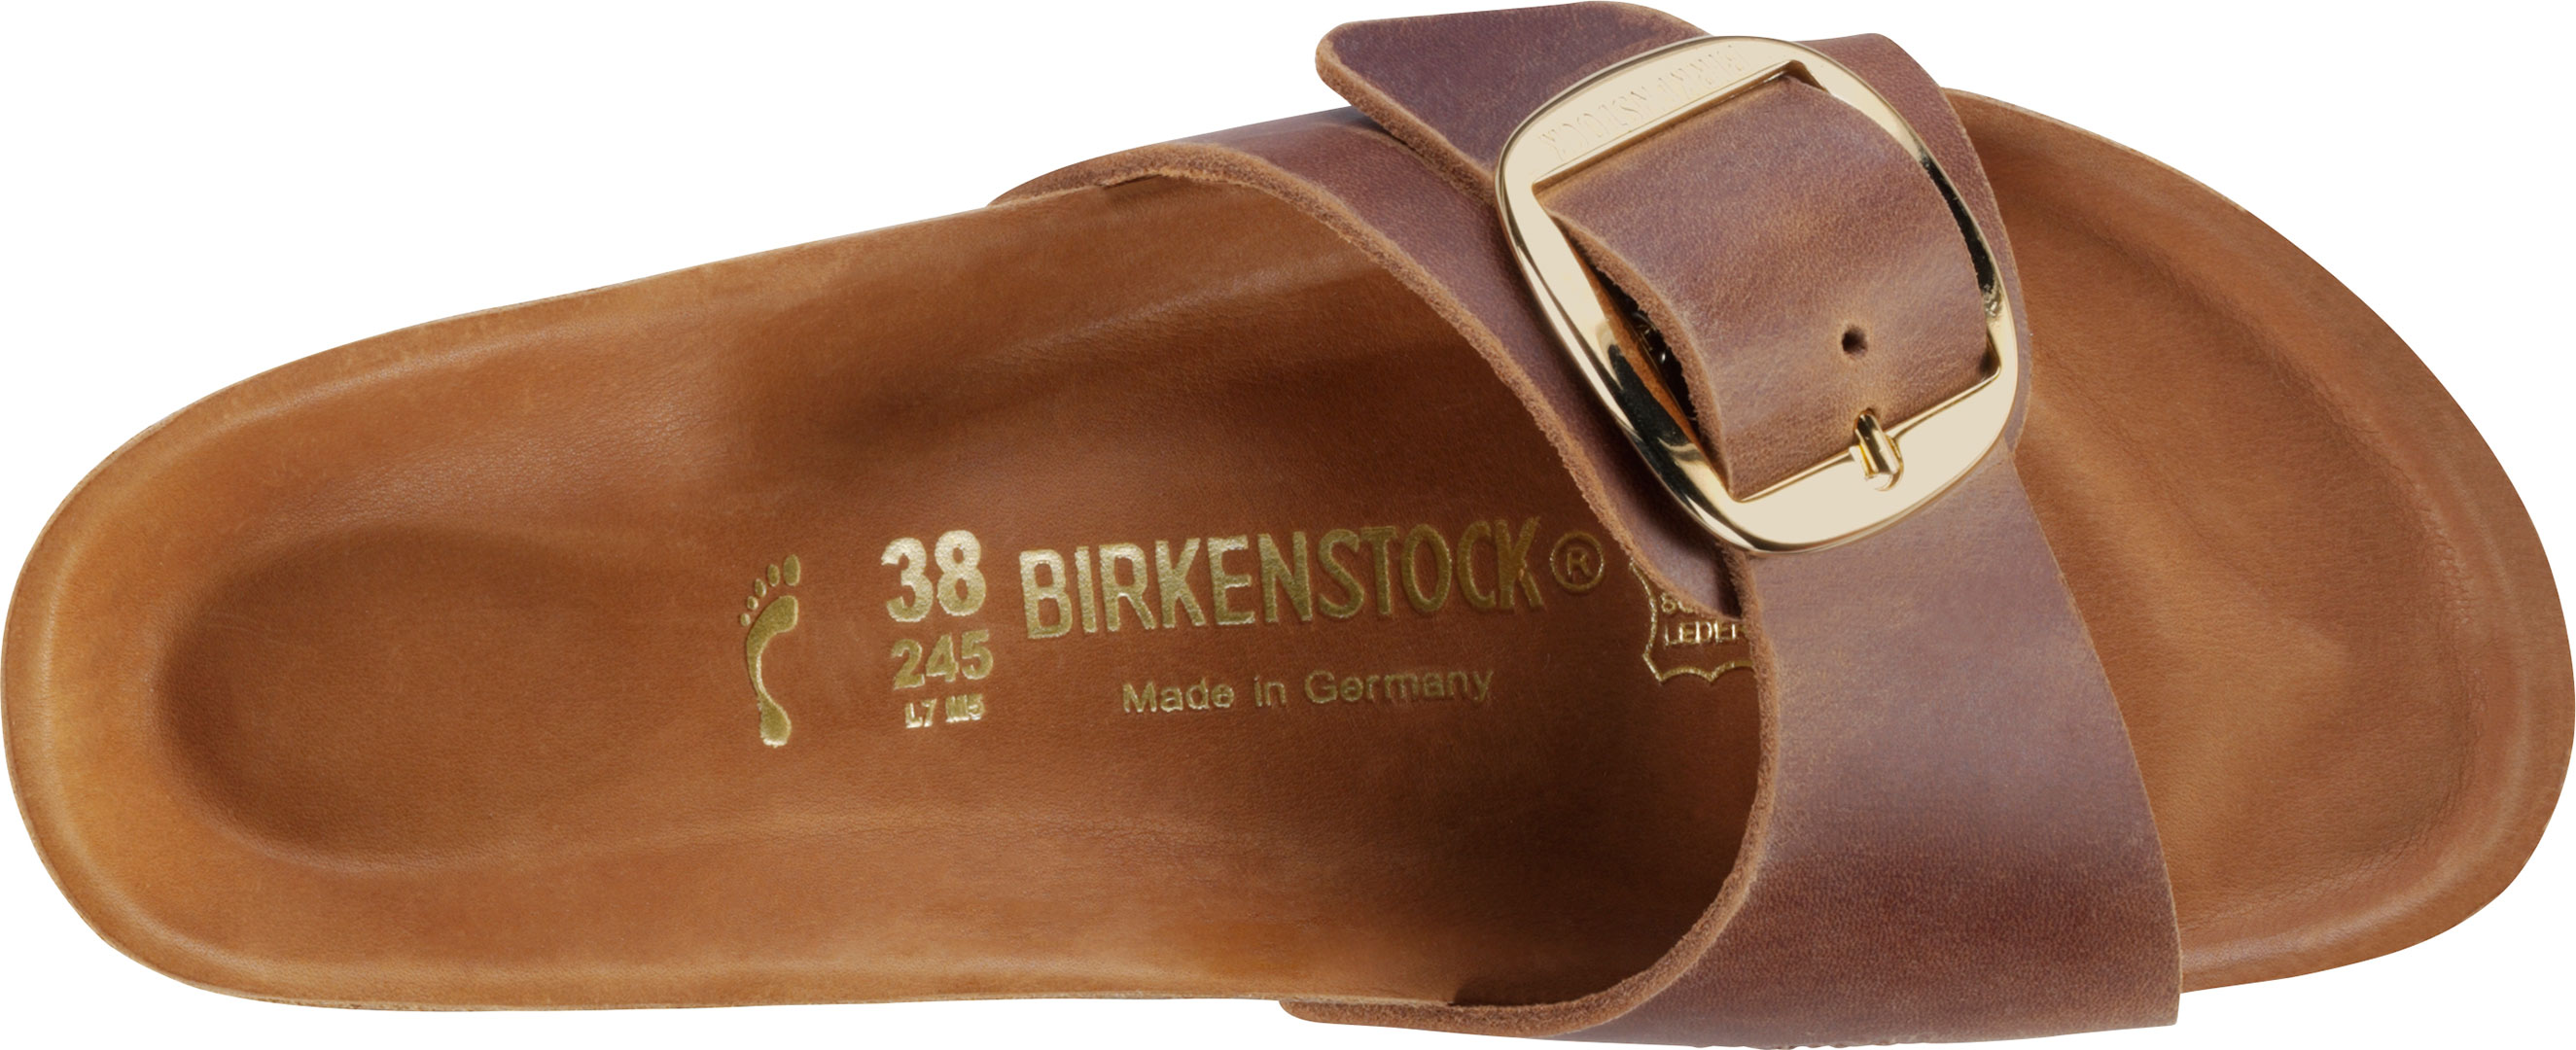 birkenstock madrid big buckle zinfandel 38